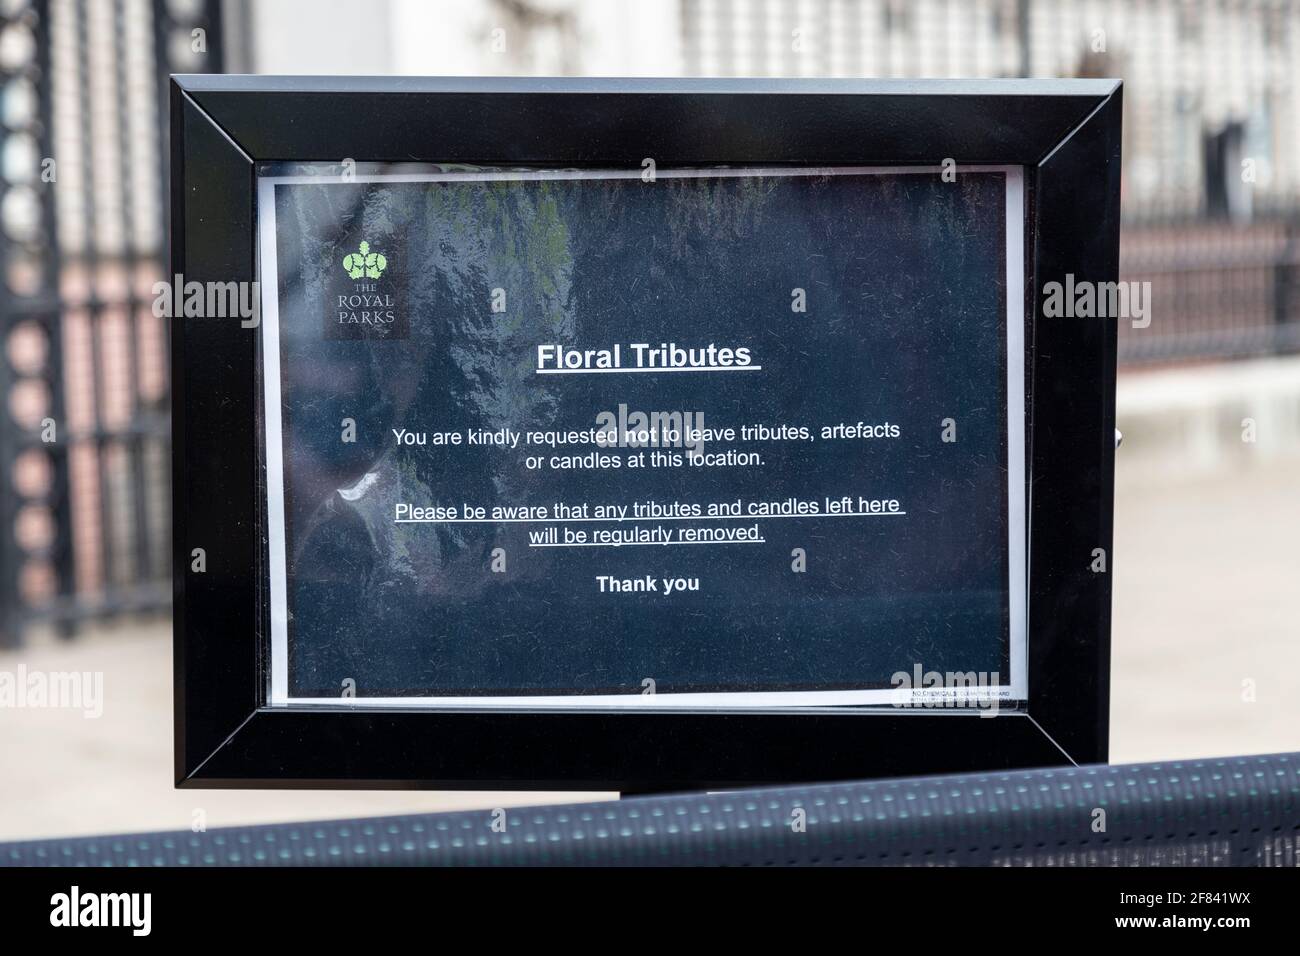 11 aprile 2021, Londra, Regno Unito - Avviso sui tributi di fiori fuori Buckingham Palace dopo la morte del principe Filippo, duca di Edimburgo il 9 aprile Foto Stock